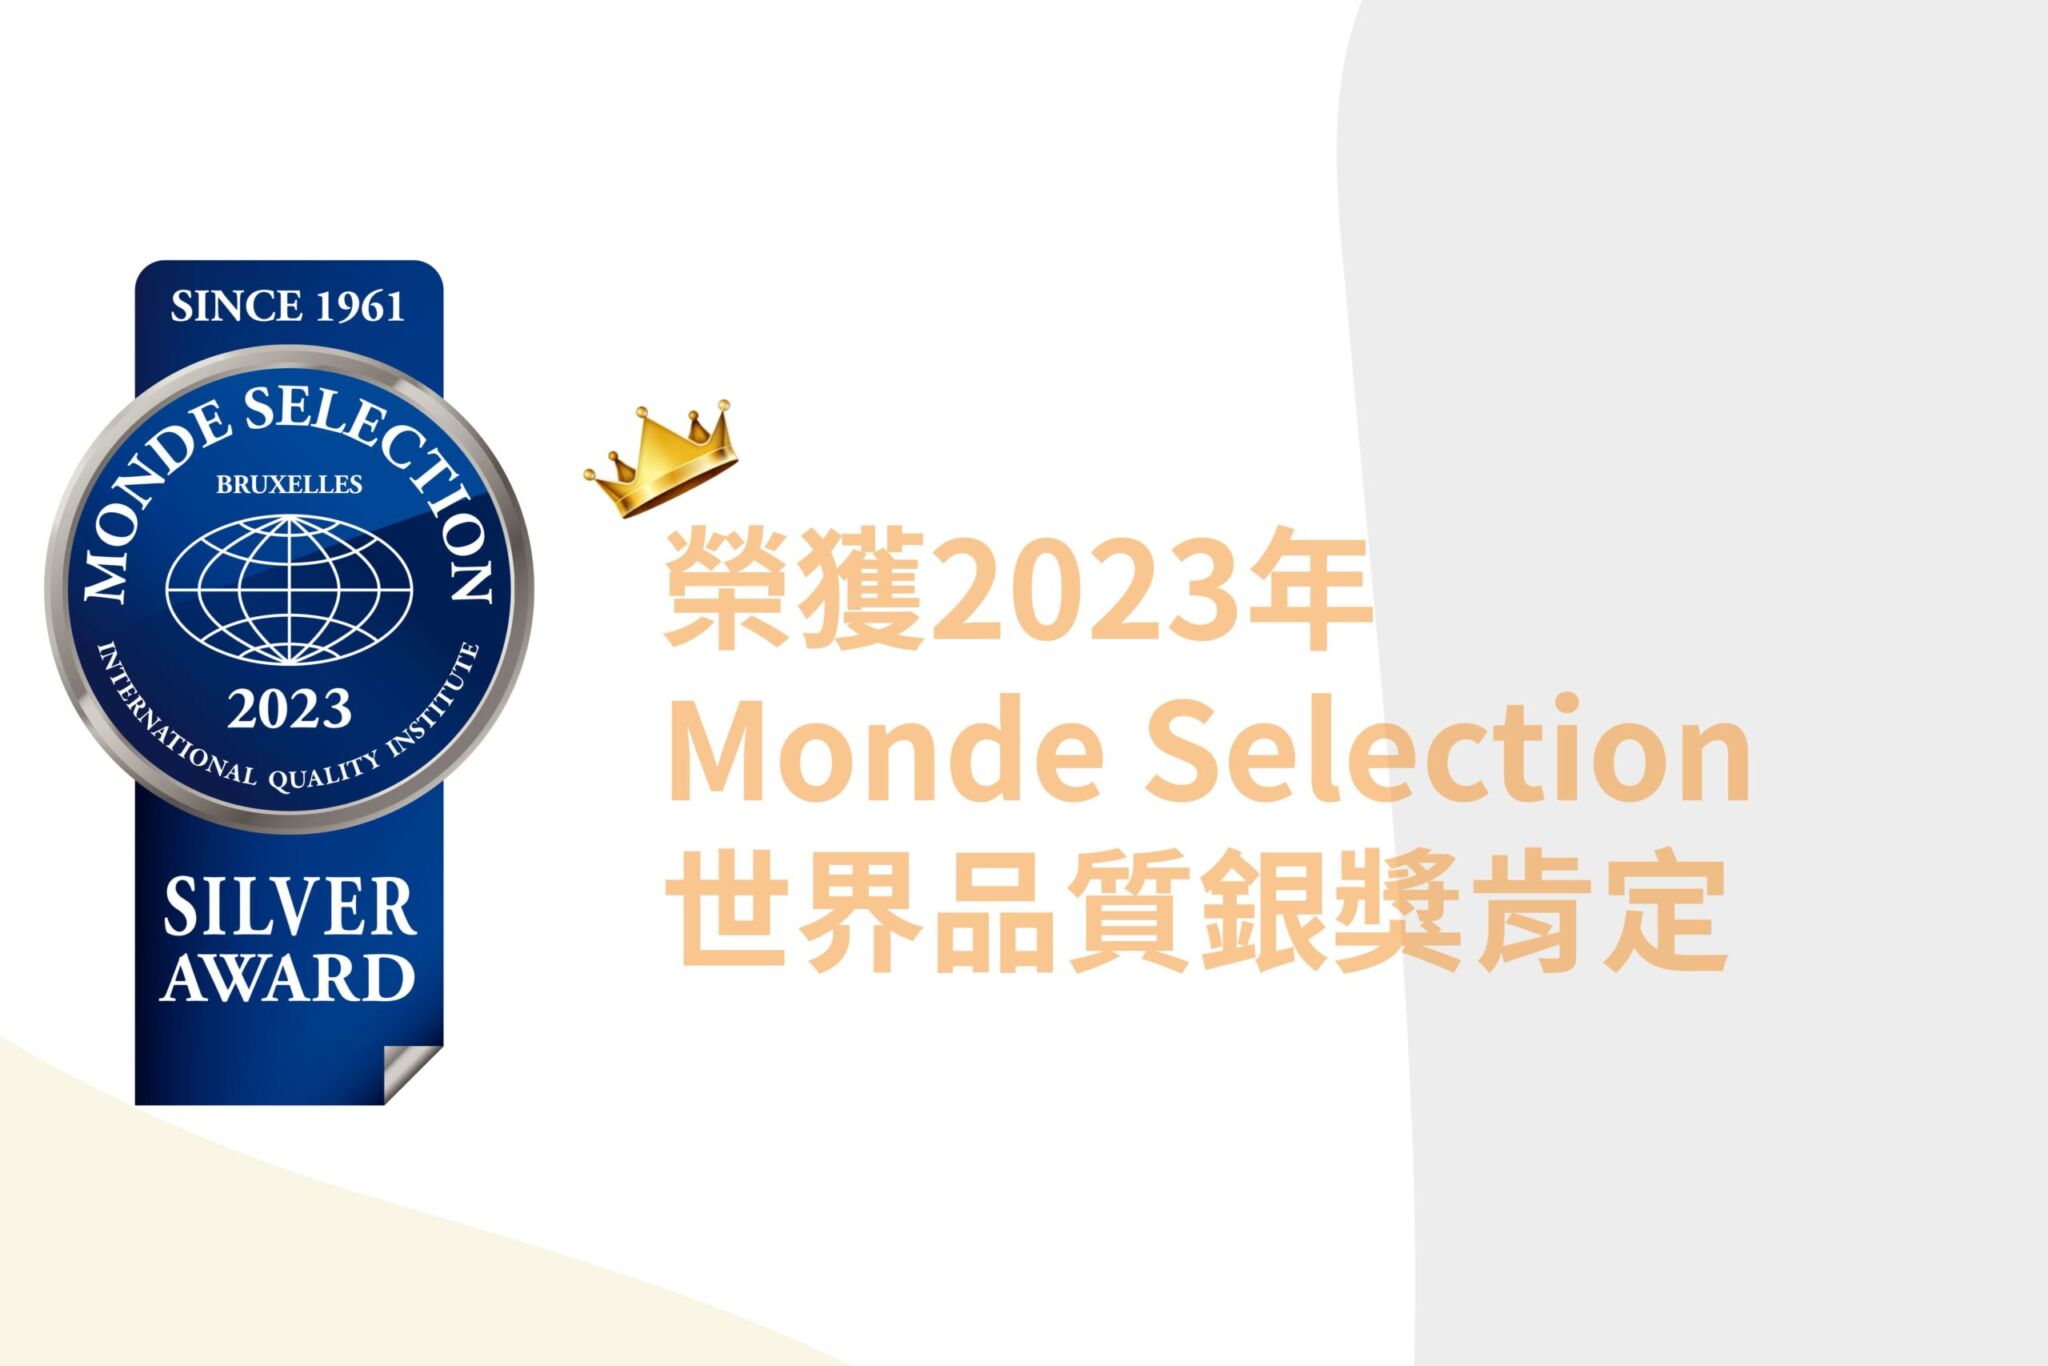 凌鶴光漾葉黃素 榮獲2023世界品質獎